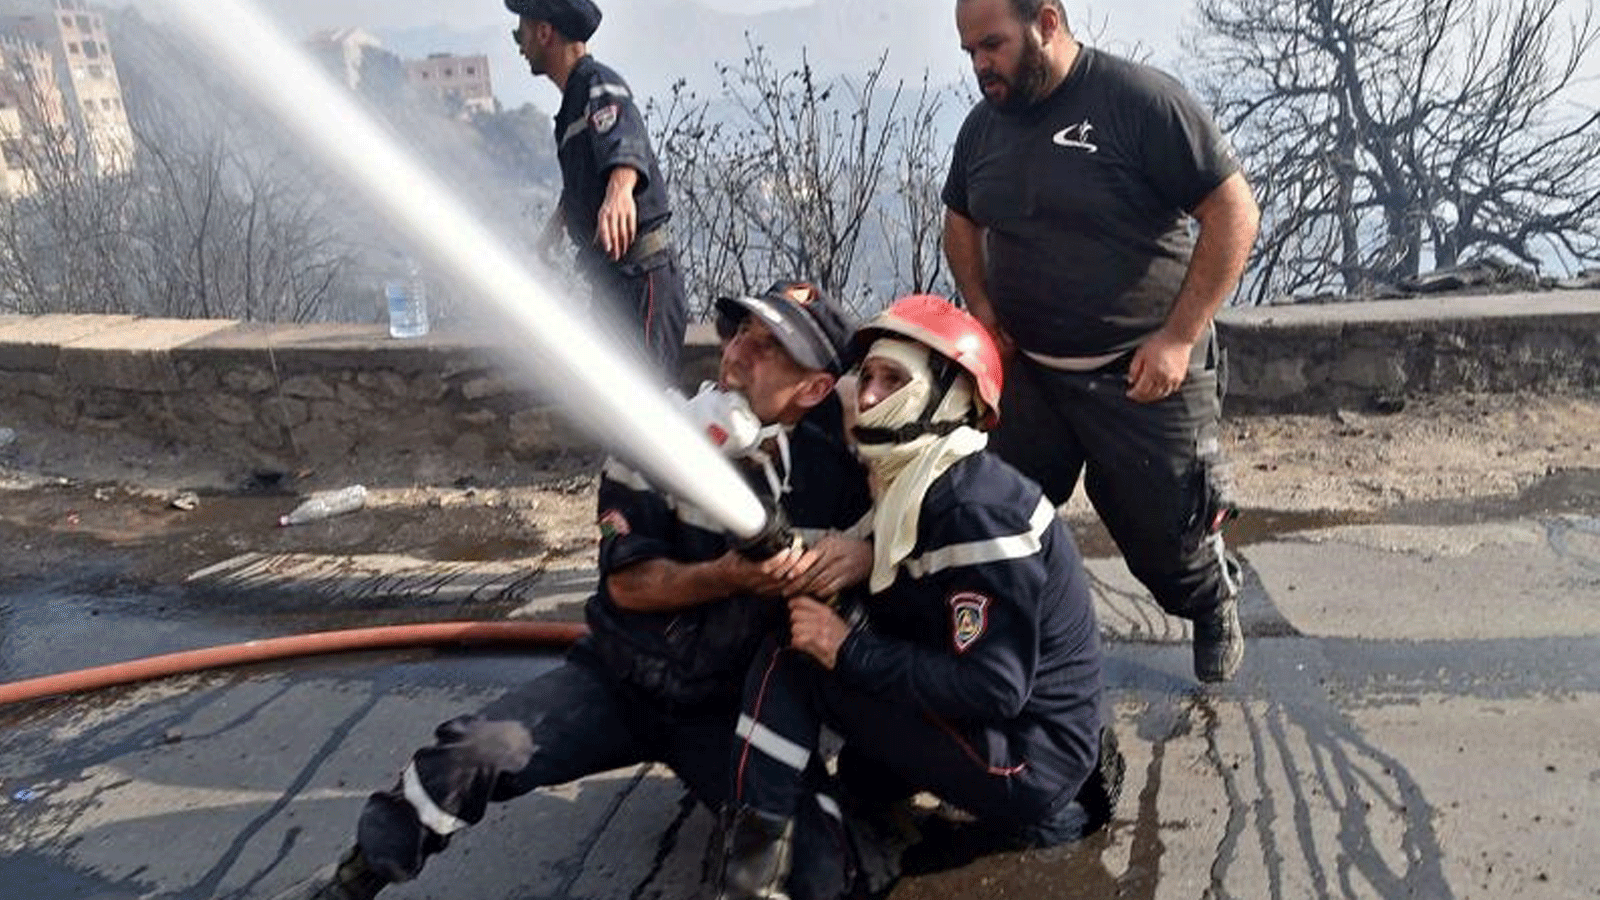 رجال الإطفاء يكافحون ألسنة اللهب في تلال الغابات بمنطقة القبائل، شرق العاصمة الجزائر. بتاريخ 11 آب/ أغسطس 2021.